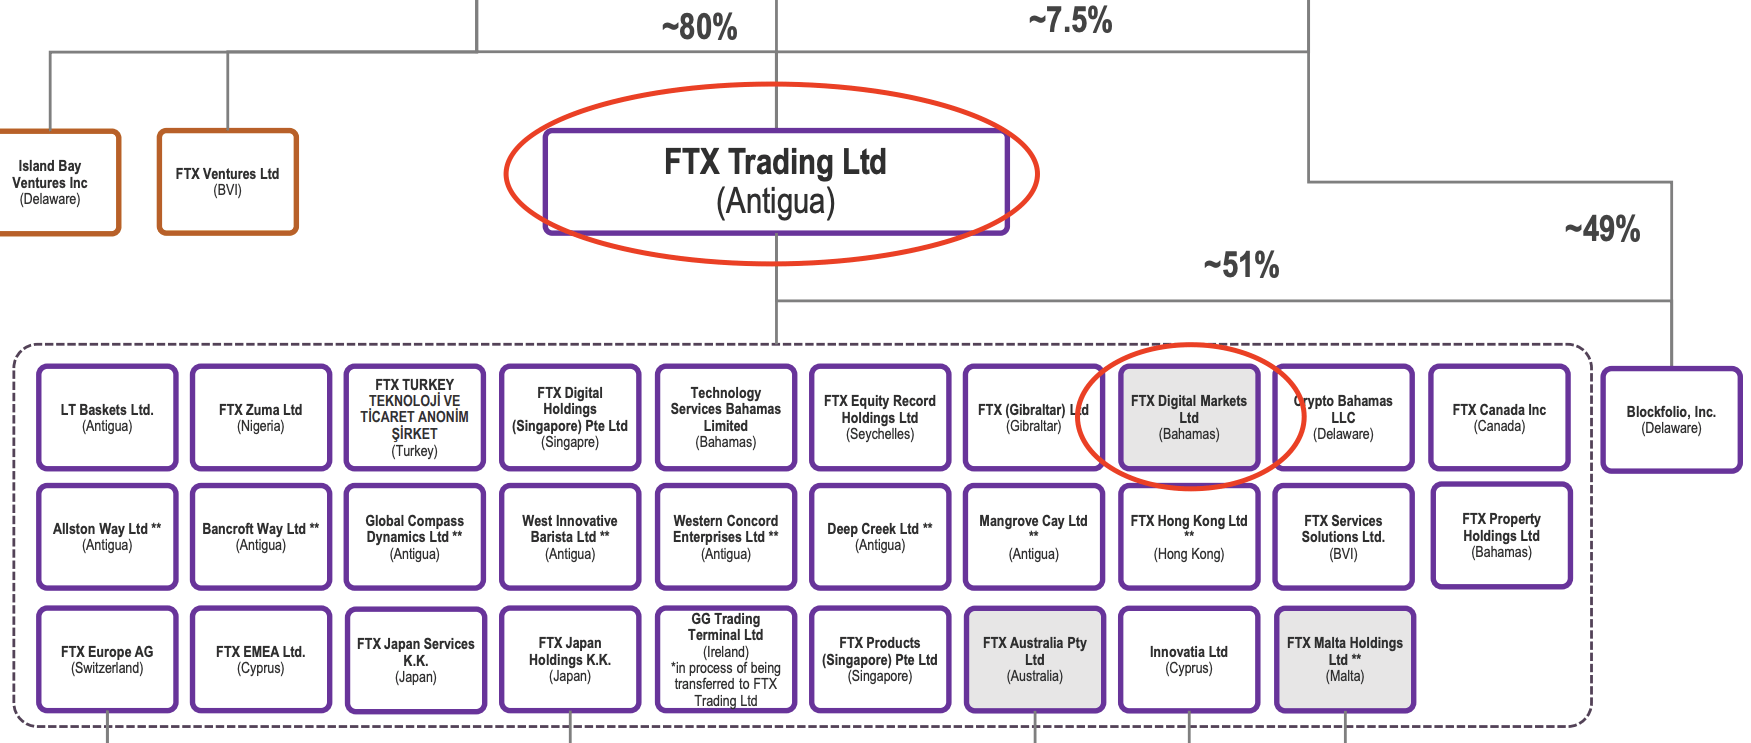 Juridiquement, FTX Digital Markets semble être une filiale de FTX Trading, et non l’inverse